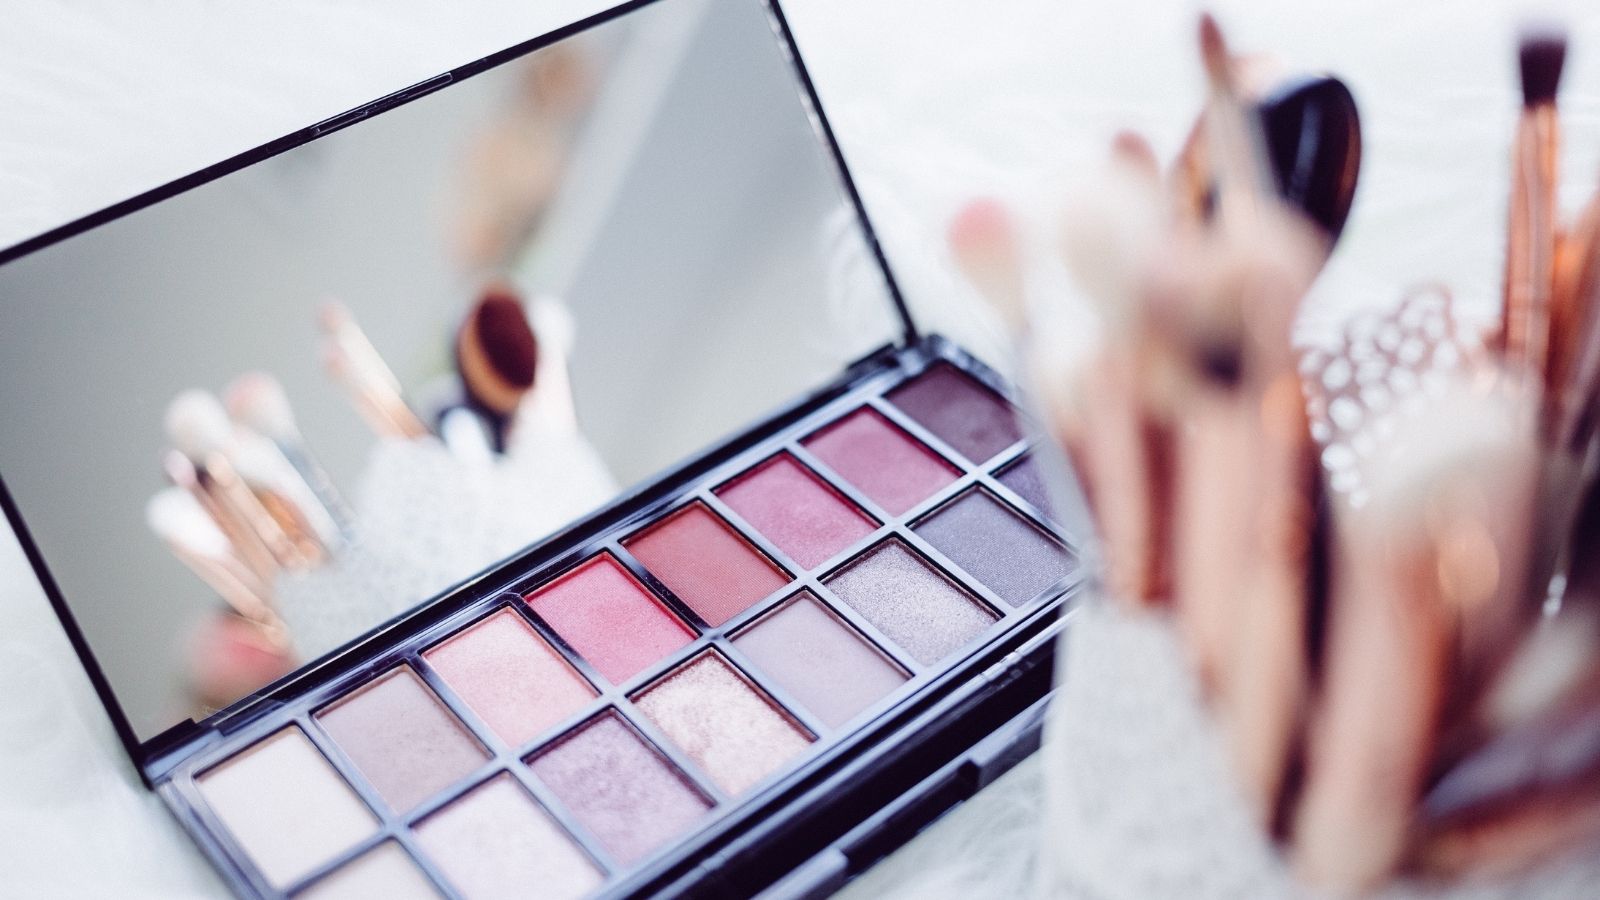 Polskie marki kosmetyczne inwestują w e-commerce [RAPORT] Raport mediarun com kosmetyki